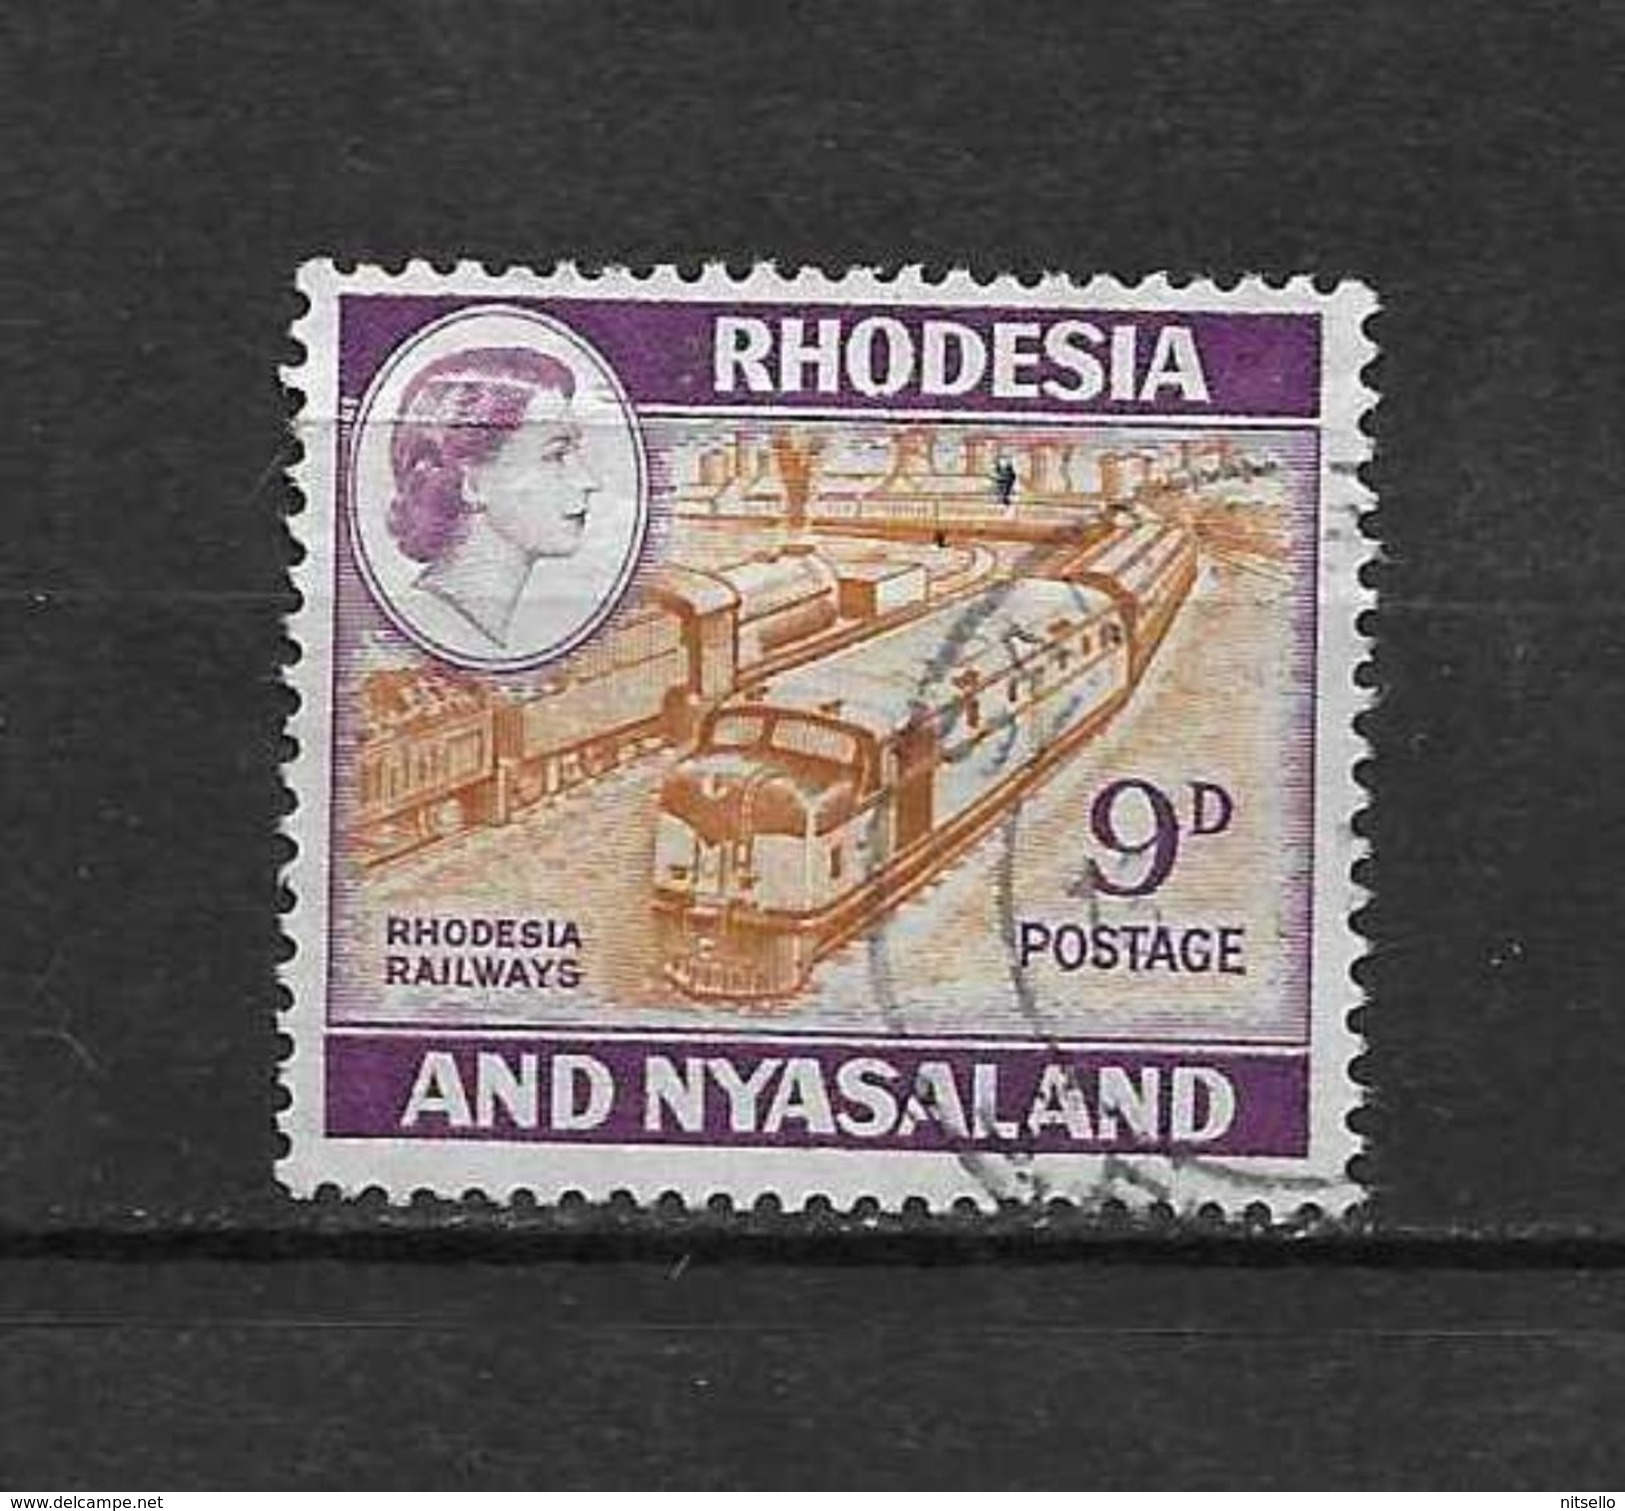 LOTE 2219A  ///   (C002)  RODESIA & NYASALAND          ¡¡¡¡¡ LIQUIDATION!!!!! - Rodesia & Nyasaland (1954-1963)